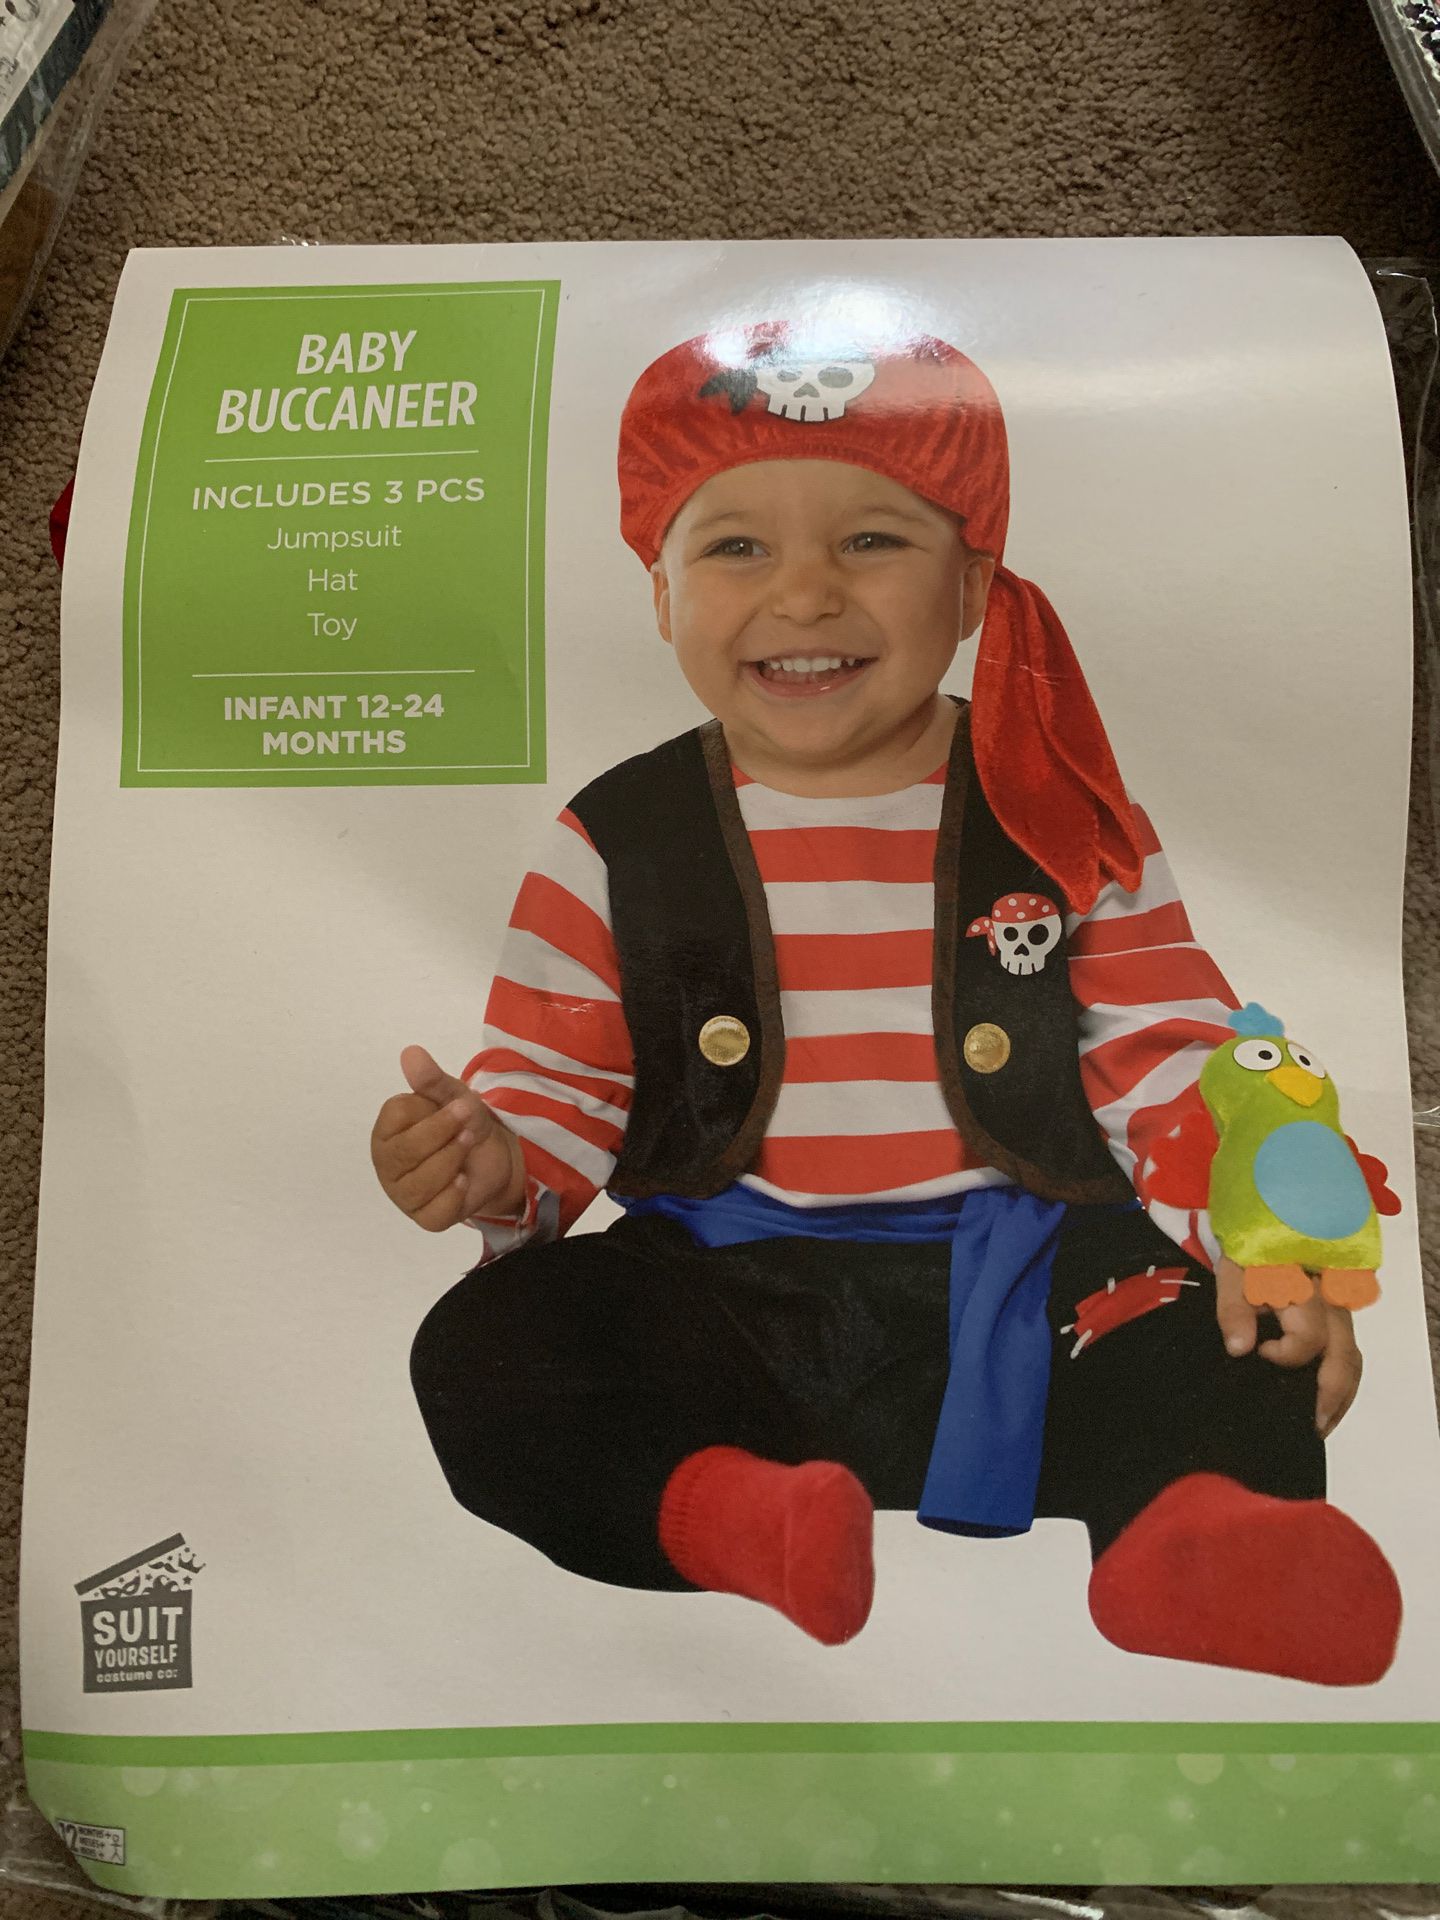 Baby pirate costume